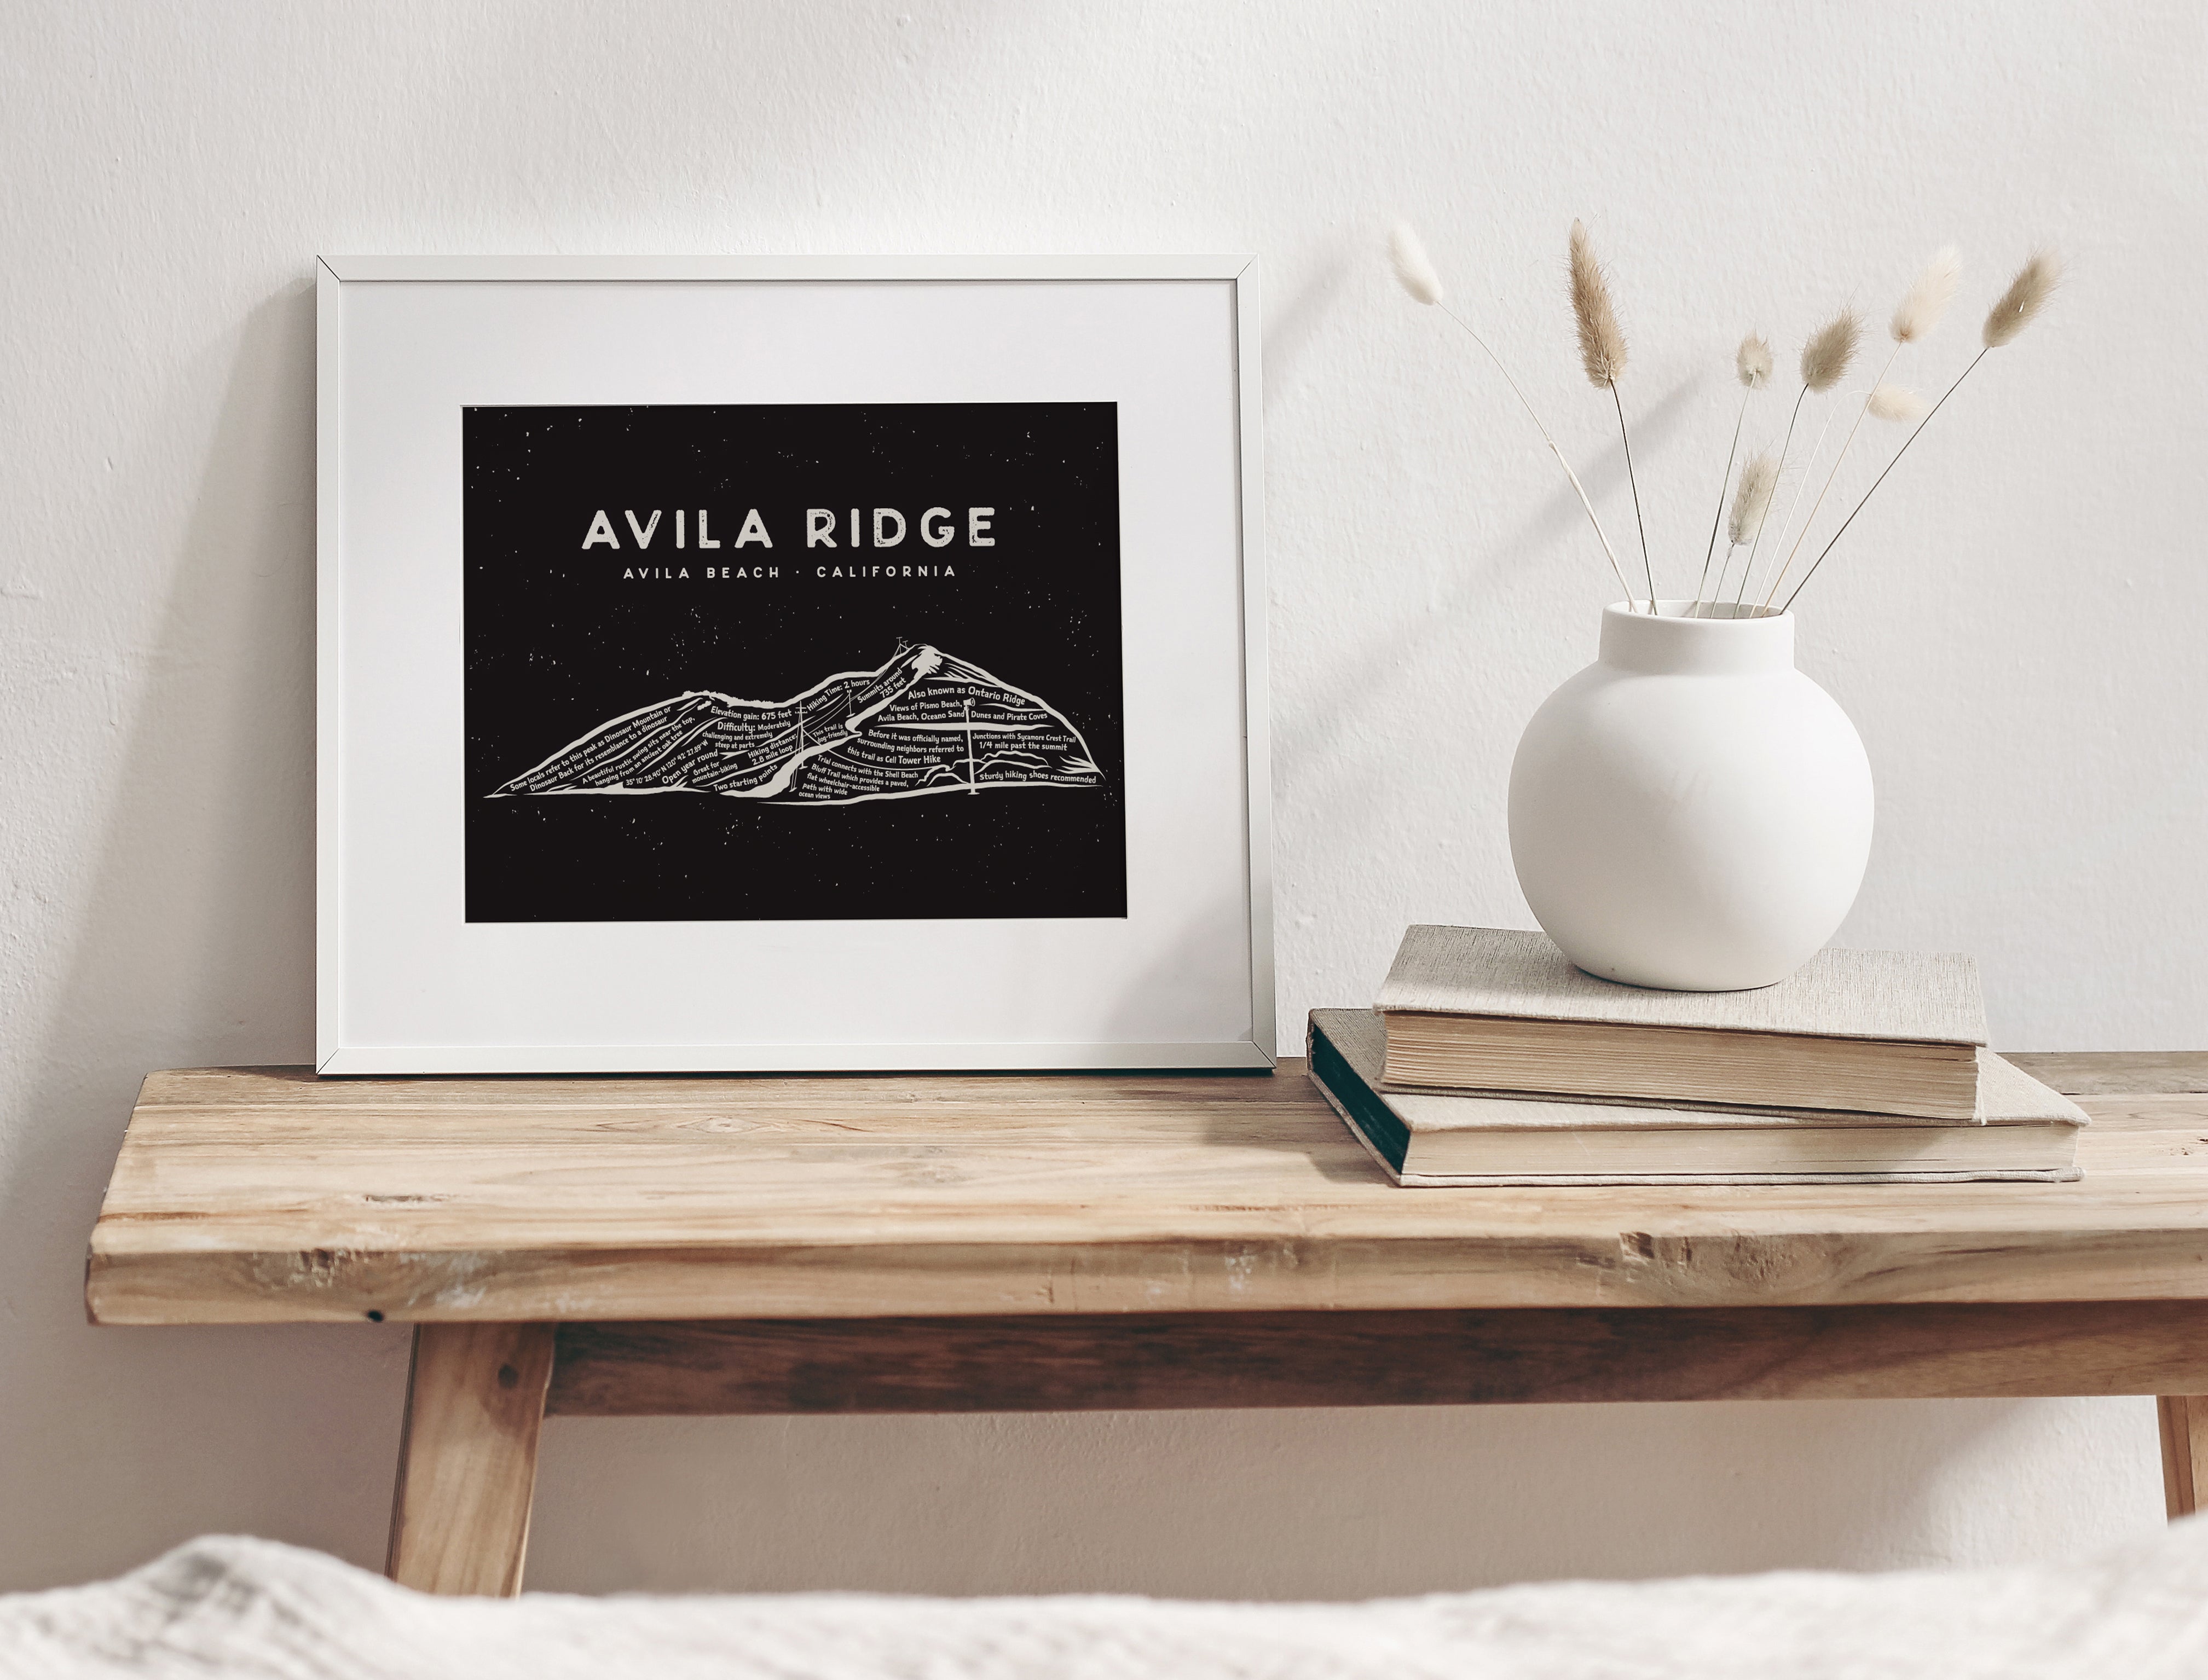 Avila Ridge Art Print